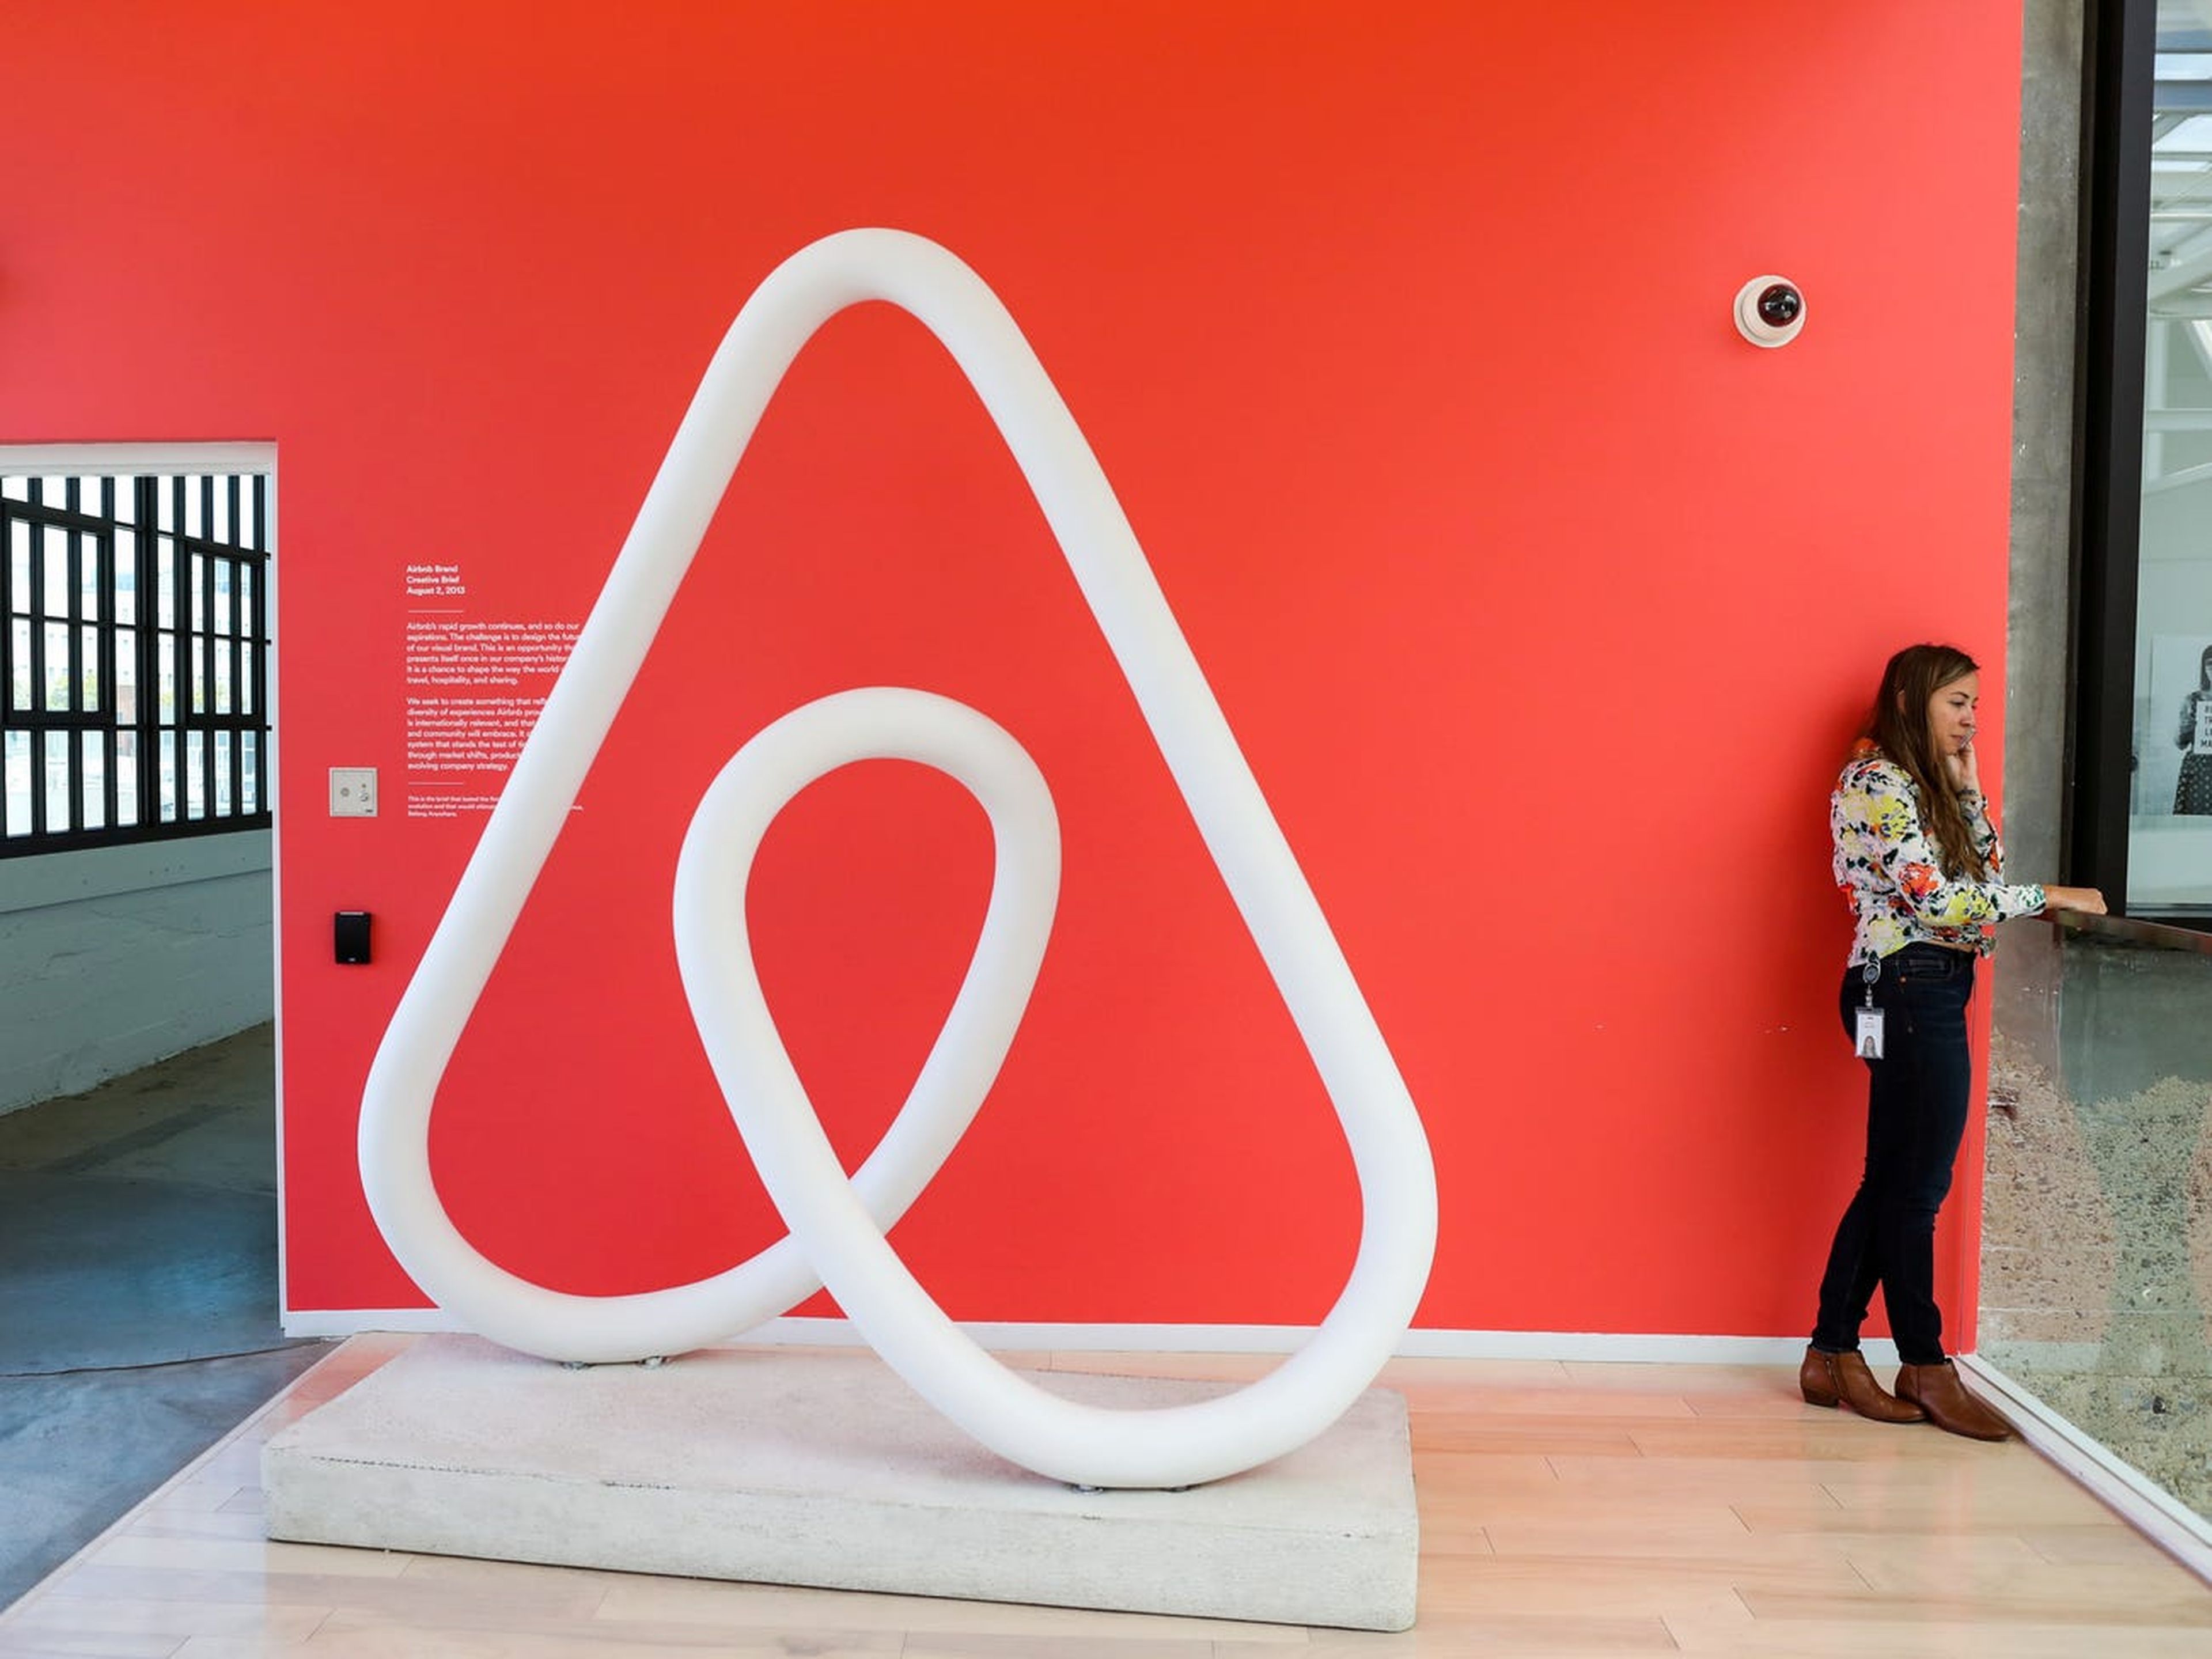 logo de Airbnb